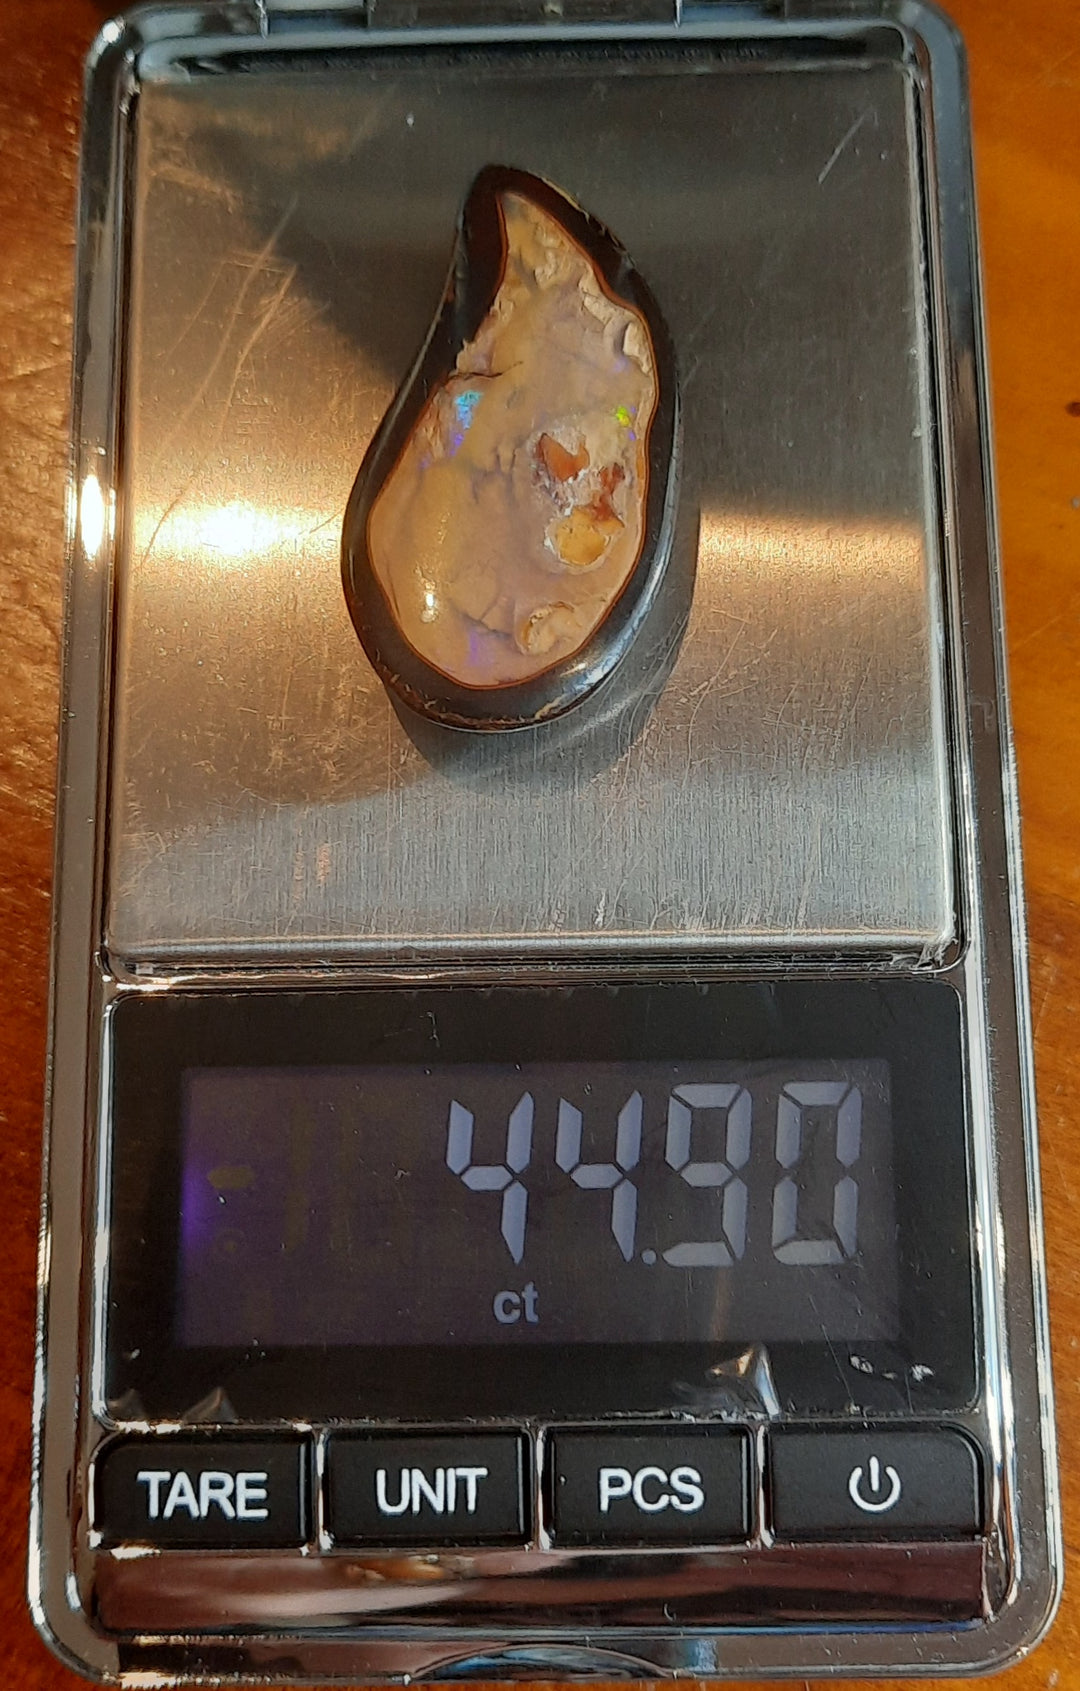 Australian Opal Yowah Nut OPL104